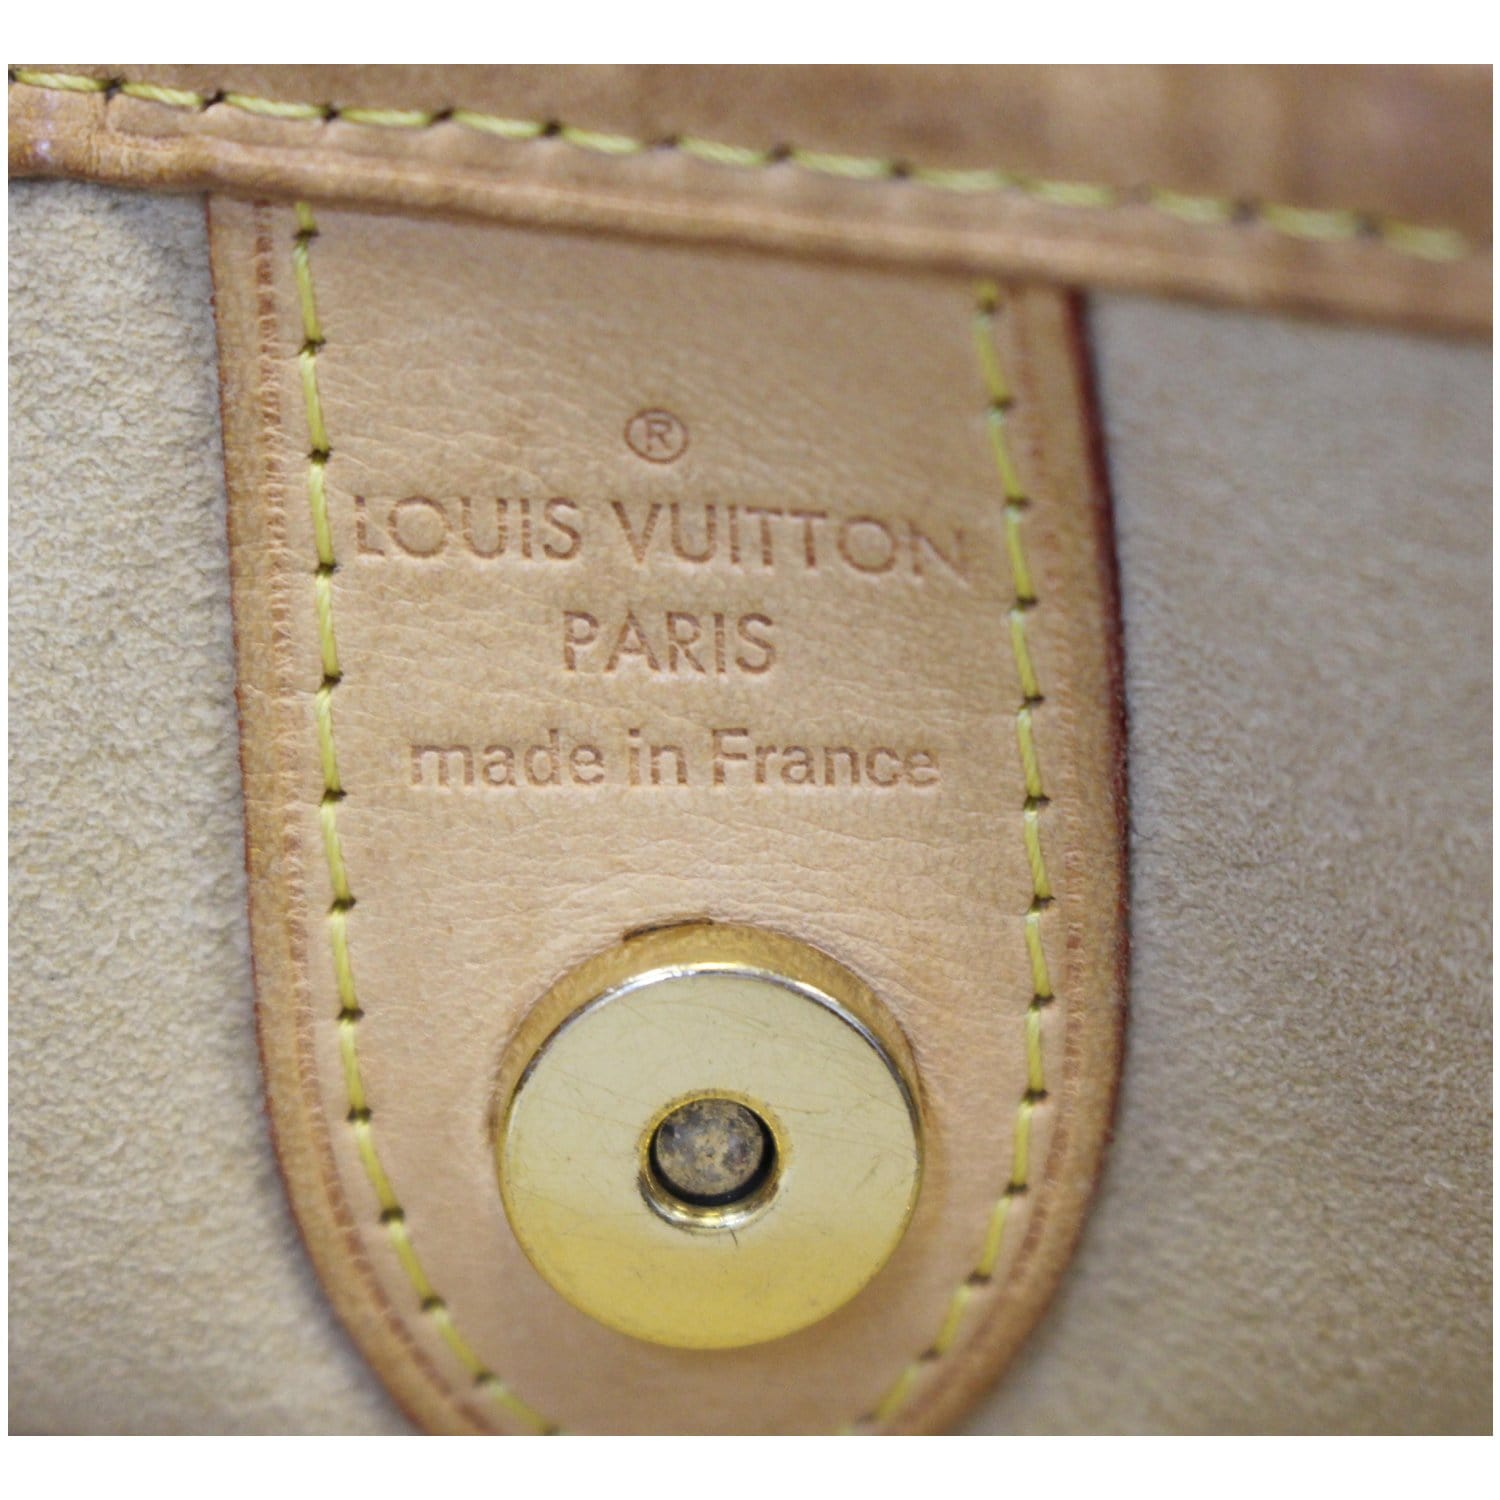 Louis Vuitton Galliera Tote 386210